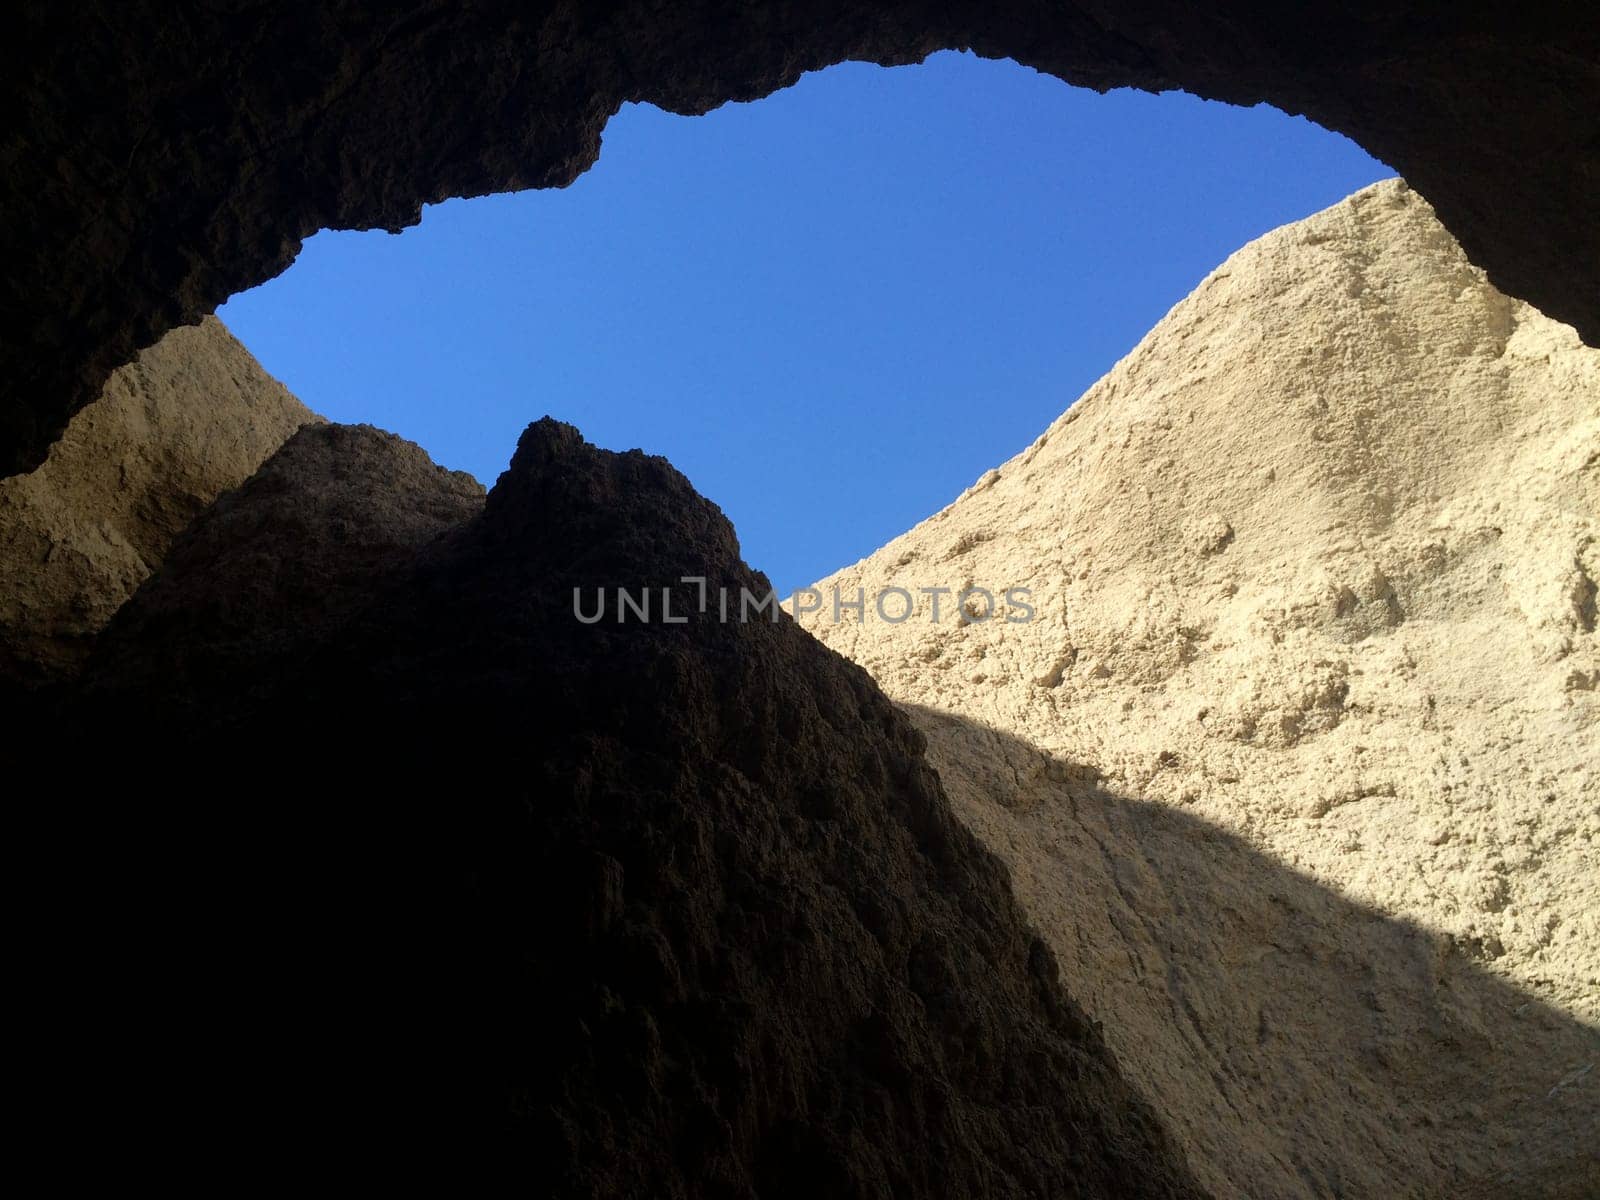 Blue Sky View Inside Tapiado Mud Caves, Anza Borrego State Park. High quality photo